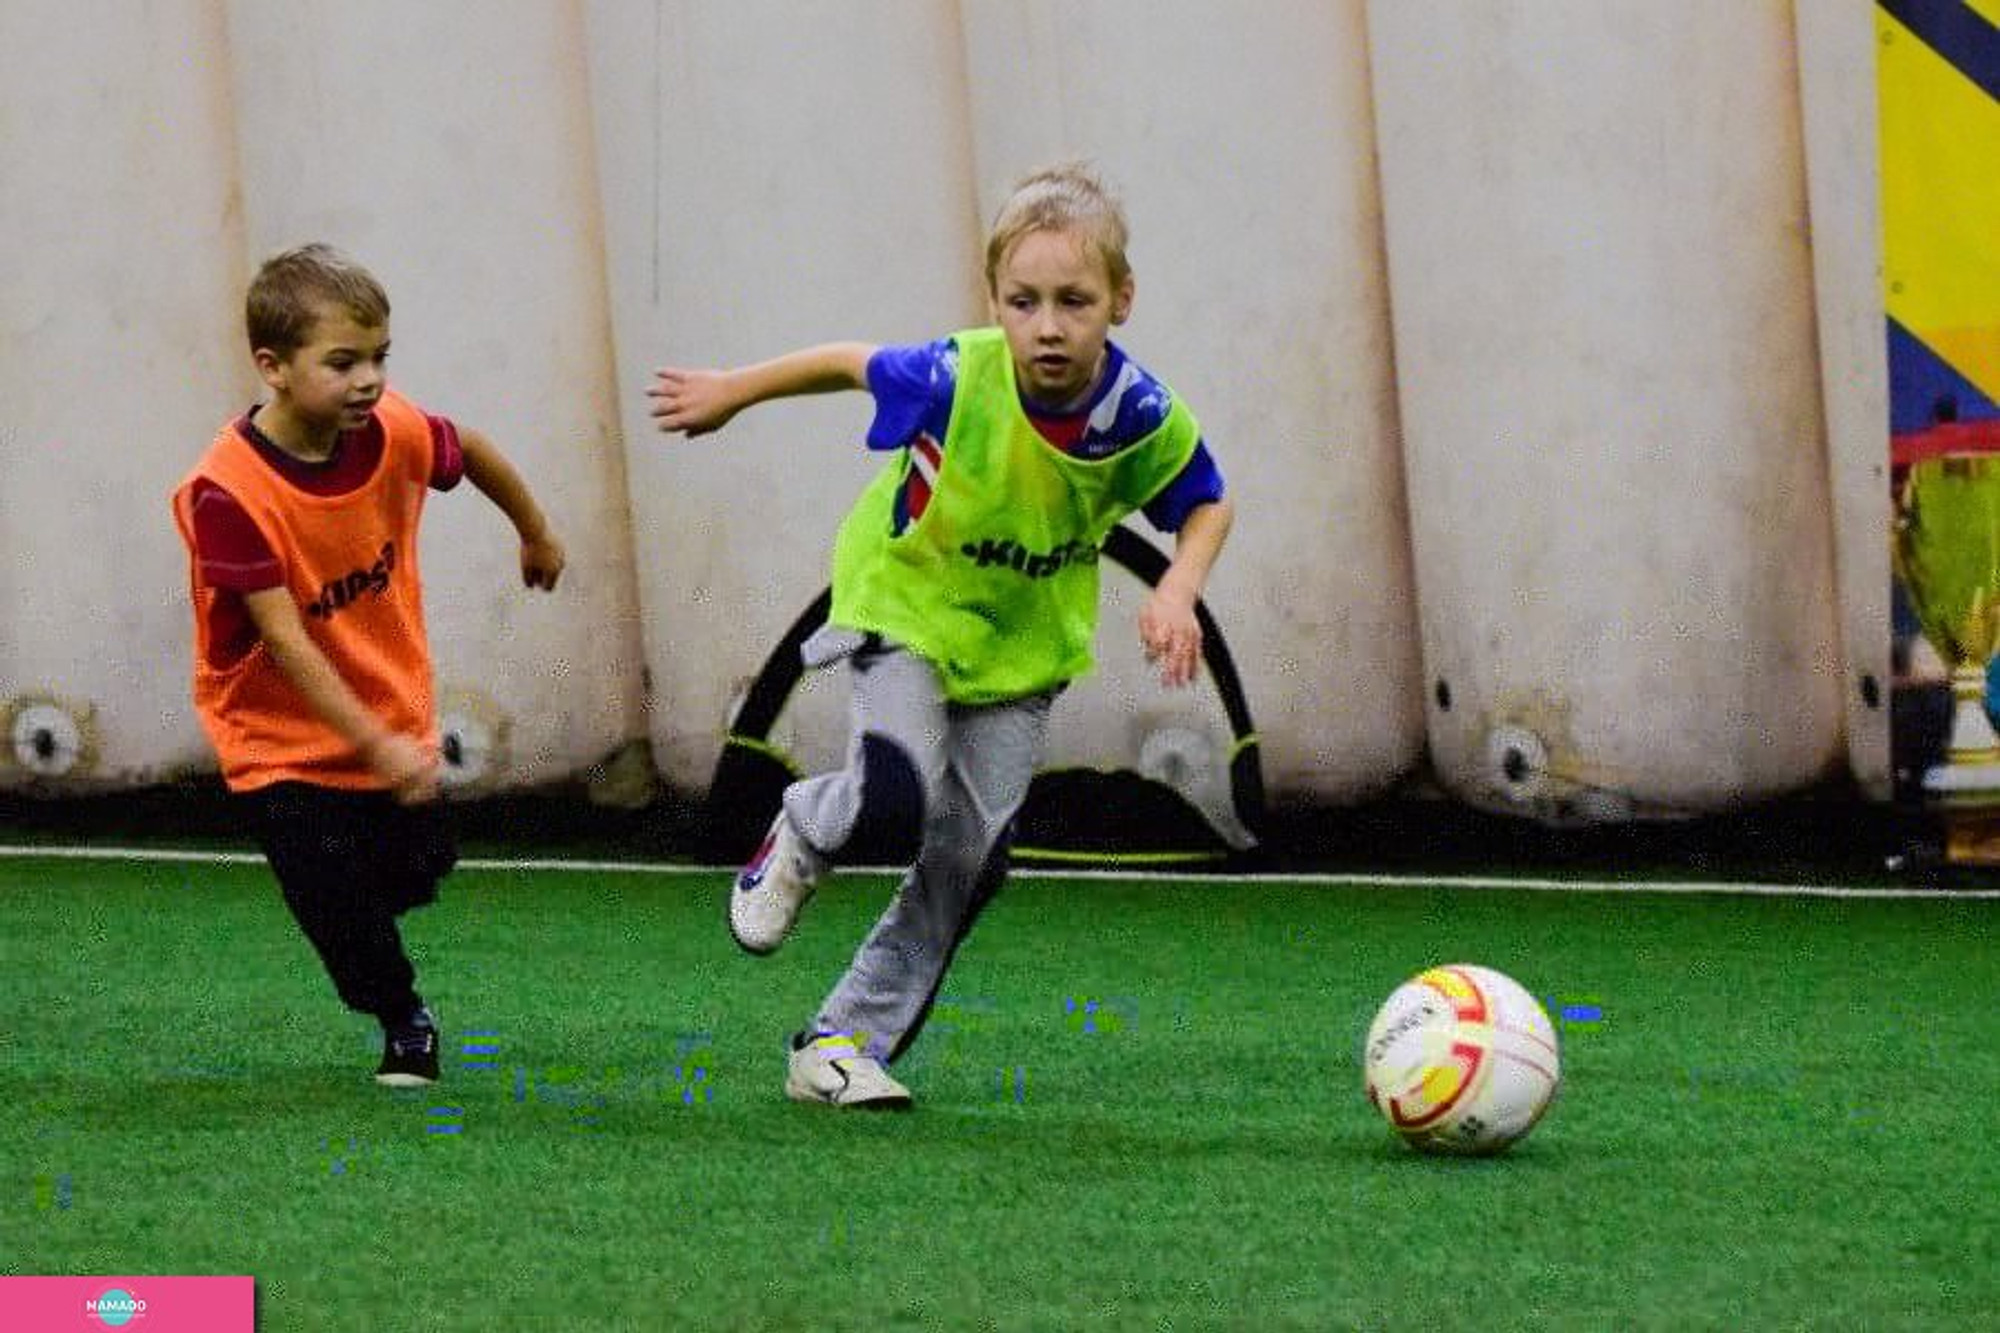 "Футболика", спортивная школа, футбол для детей от 3 до 6 лет на Удельной, СПб 